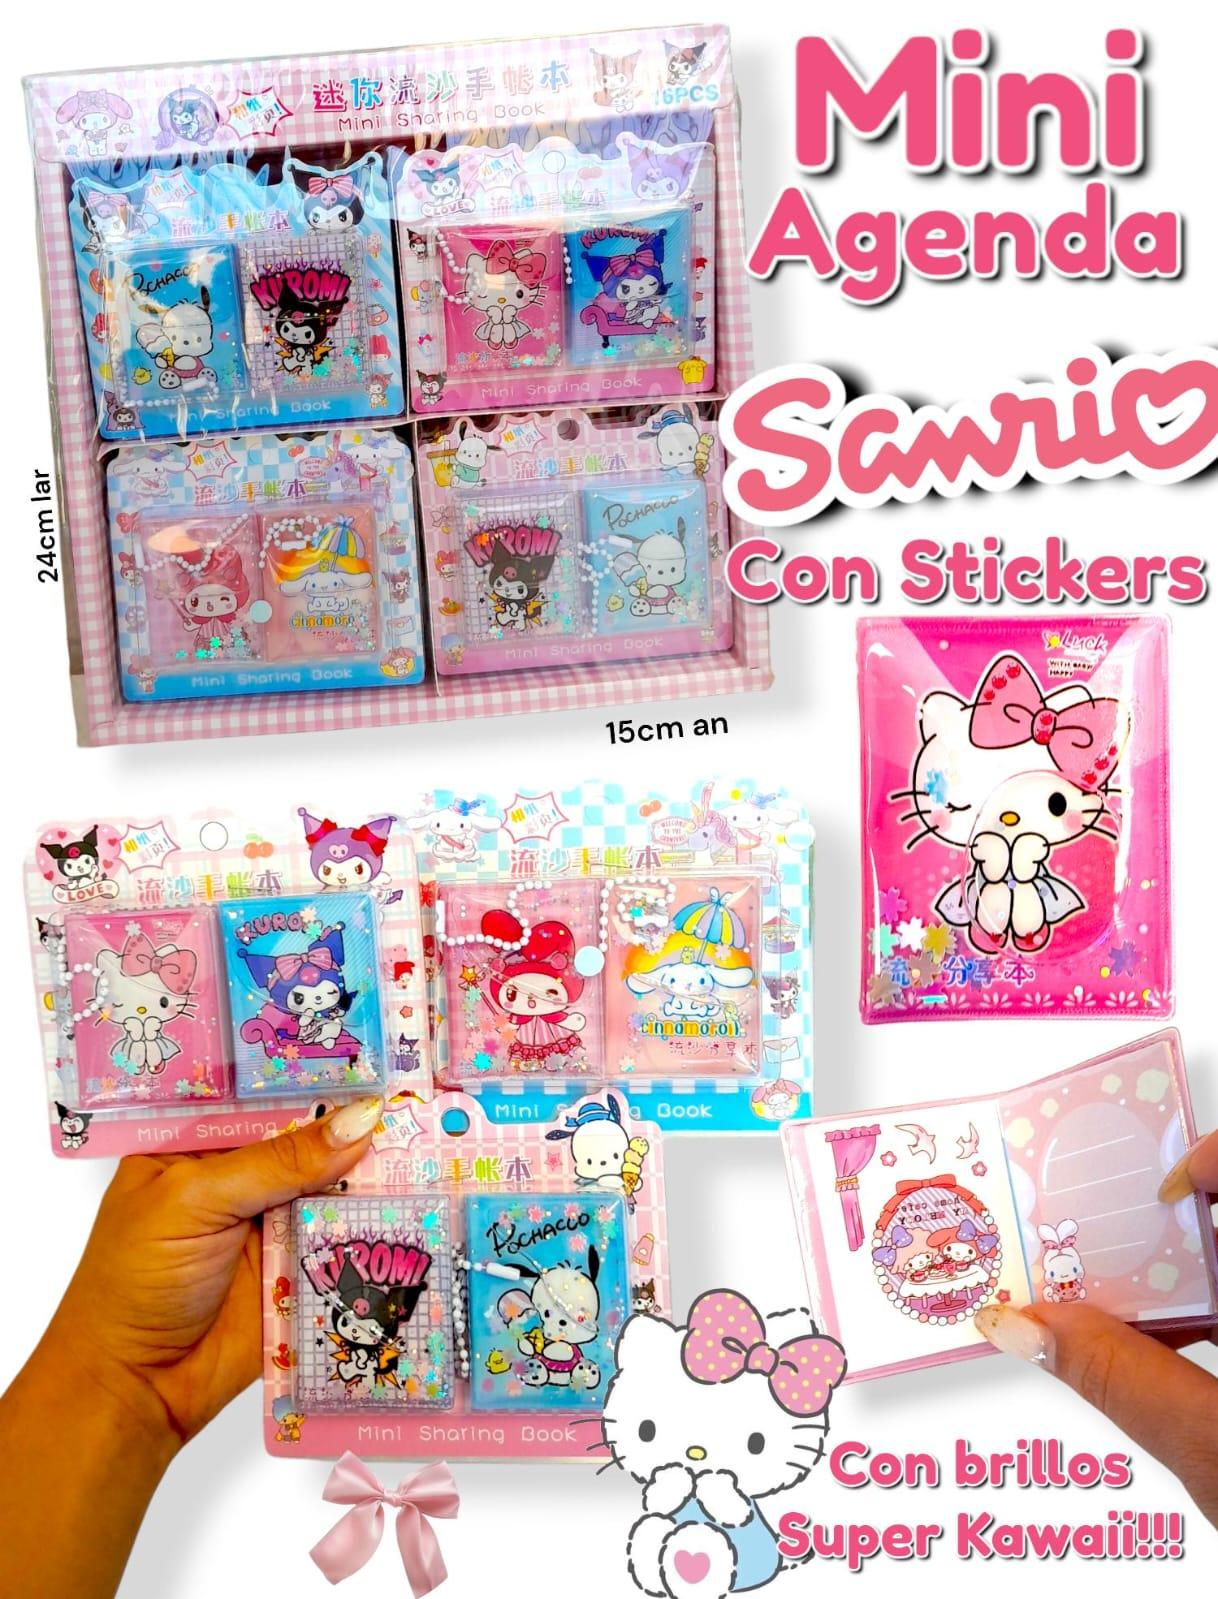 Mini Agenda SANRIO Con Stickers 